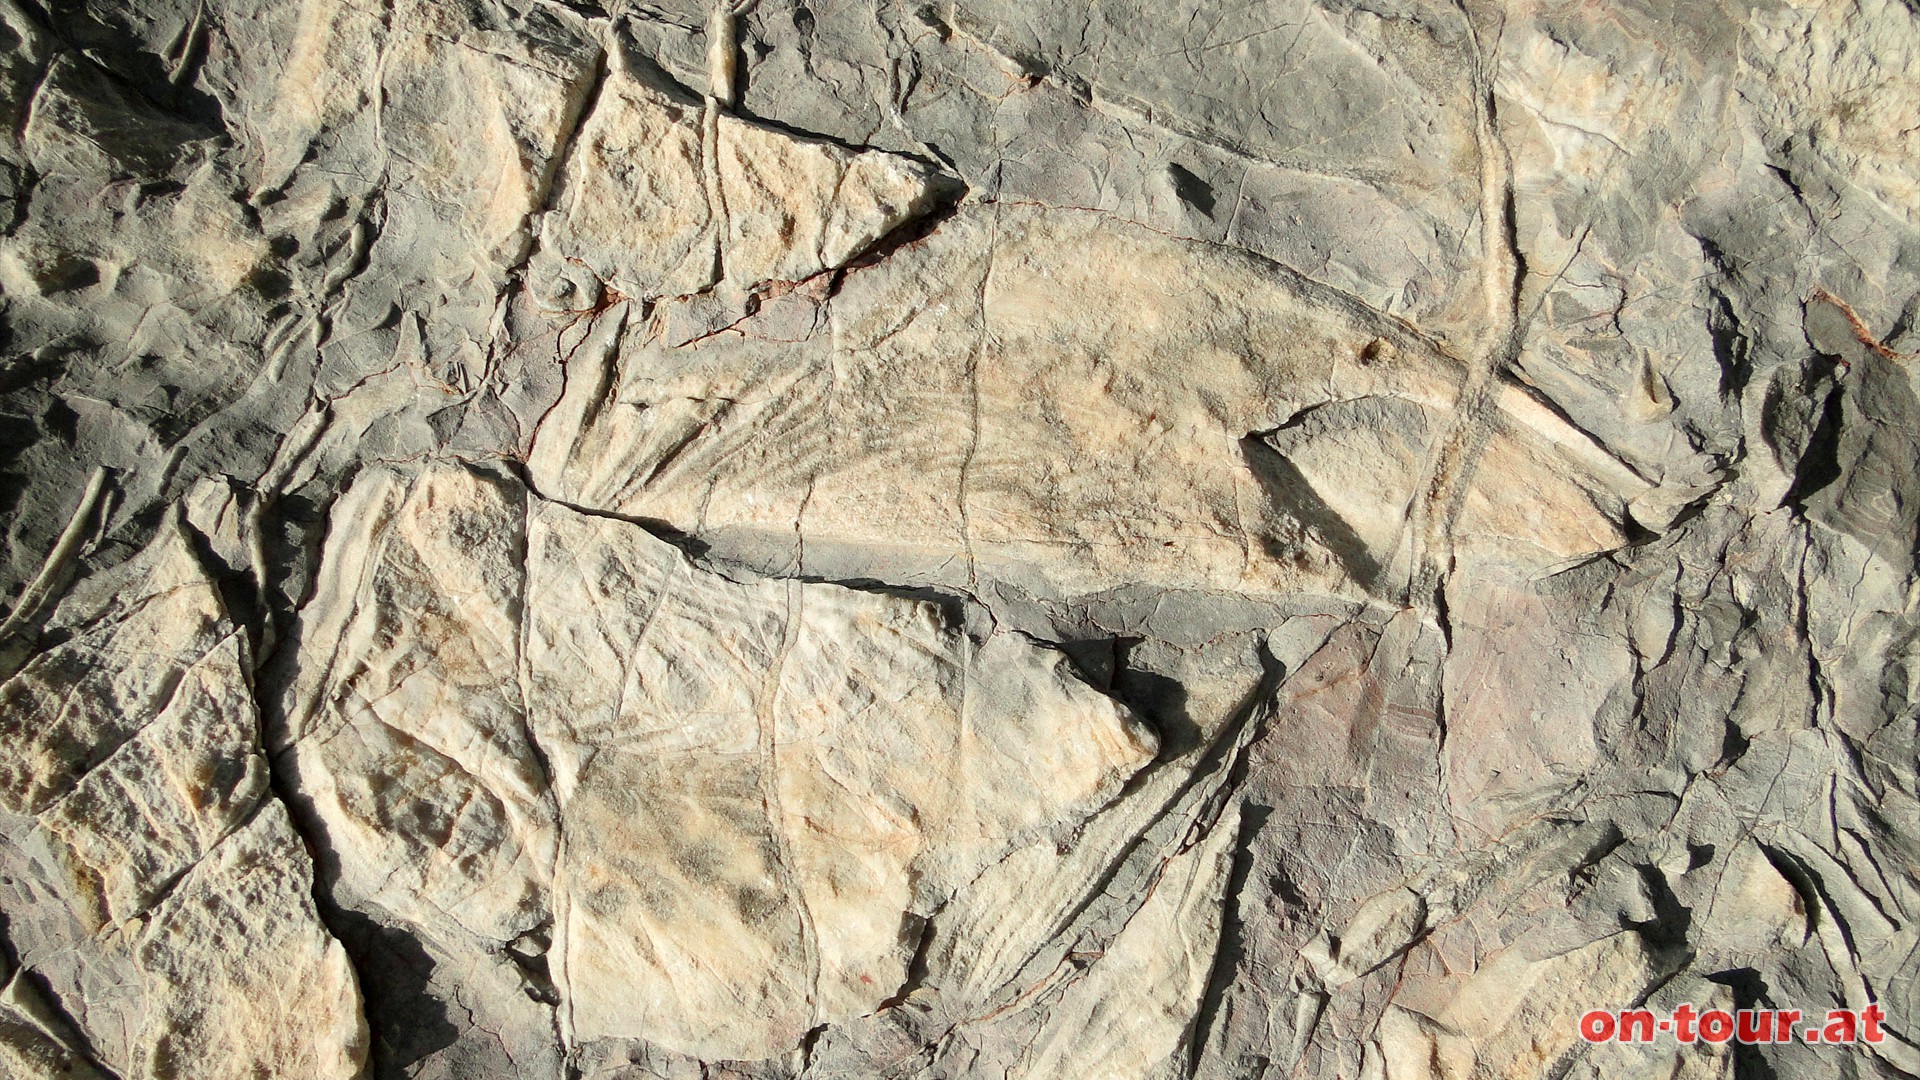 Selbst Maulffnungen und Augenhhlen sind zu sehen. Etwa um die 200 Mio. Jahre alt.